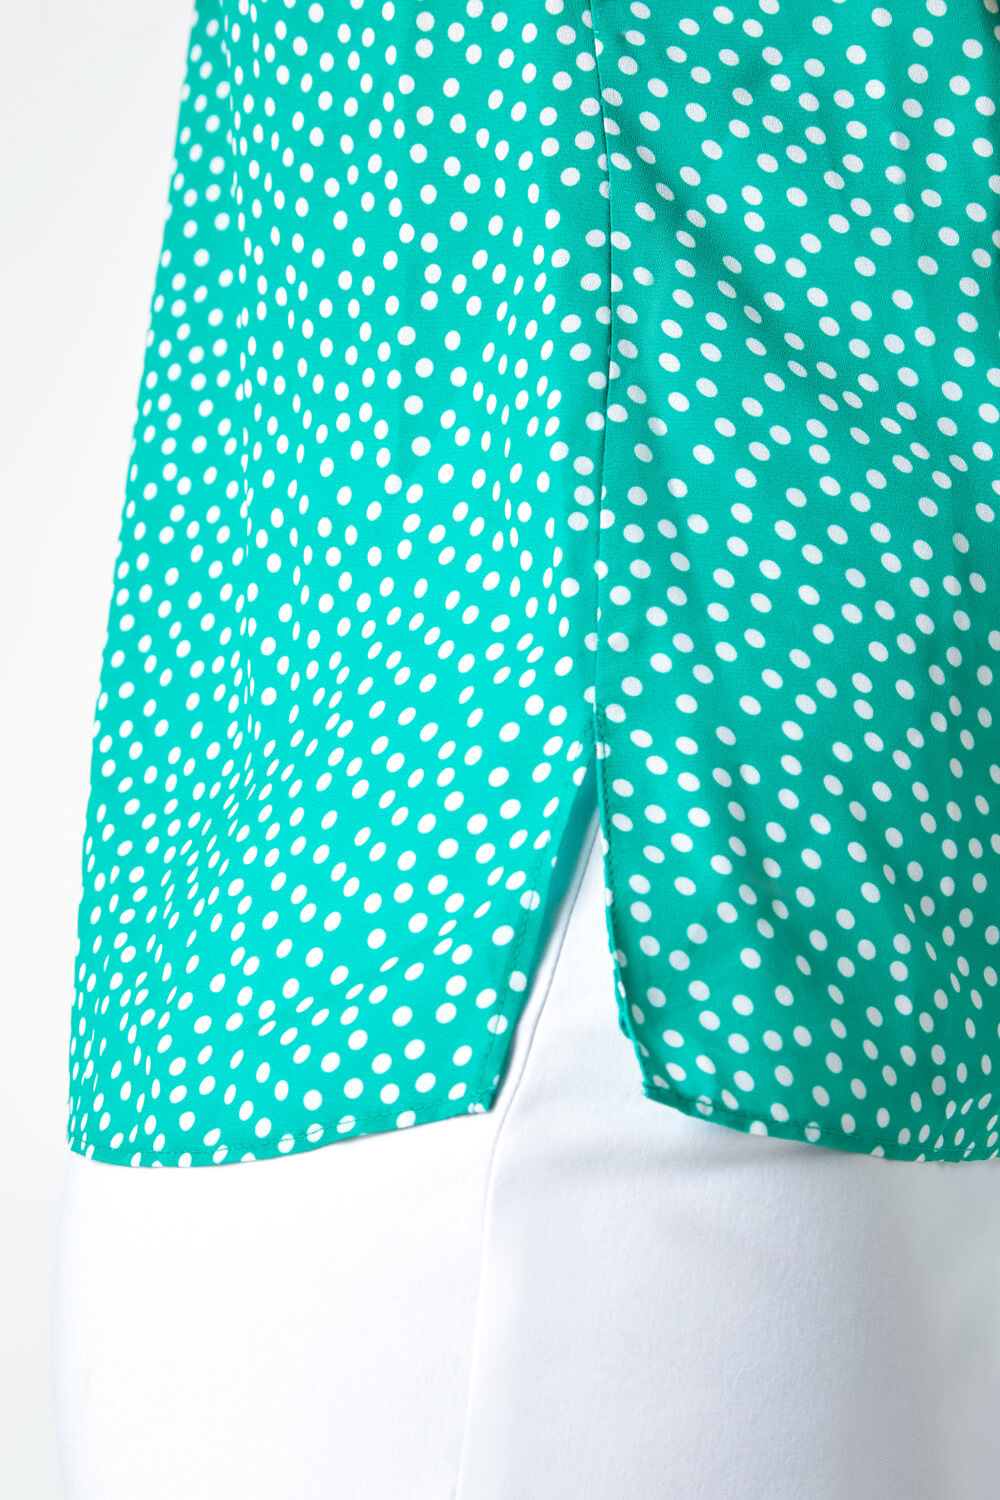 Green Polka Dot Print Cami Top, Image 5 of 5